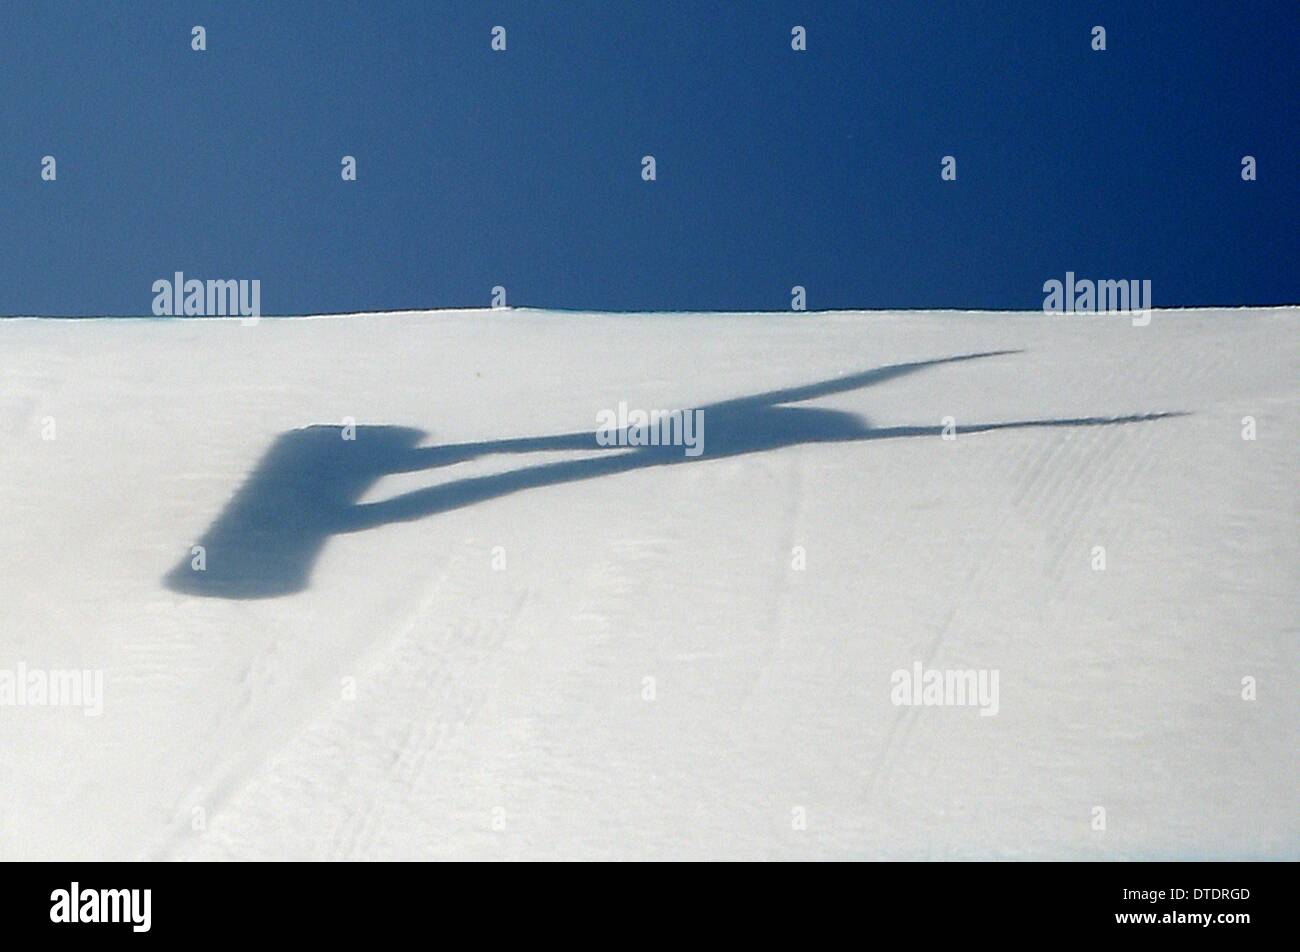 Der Schatten von Lindsey Jacobellis (USA) als She Ländereien in der Qualifikation. Womens Snowbboard Cross - Rosa Khutor Extreme Park - Sotschi - Russland - 16.02.2014 Stockfoto